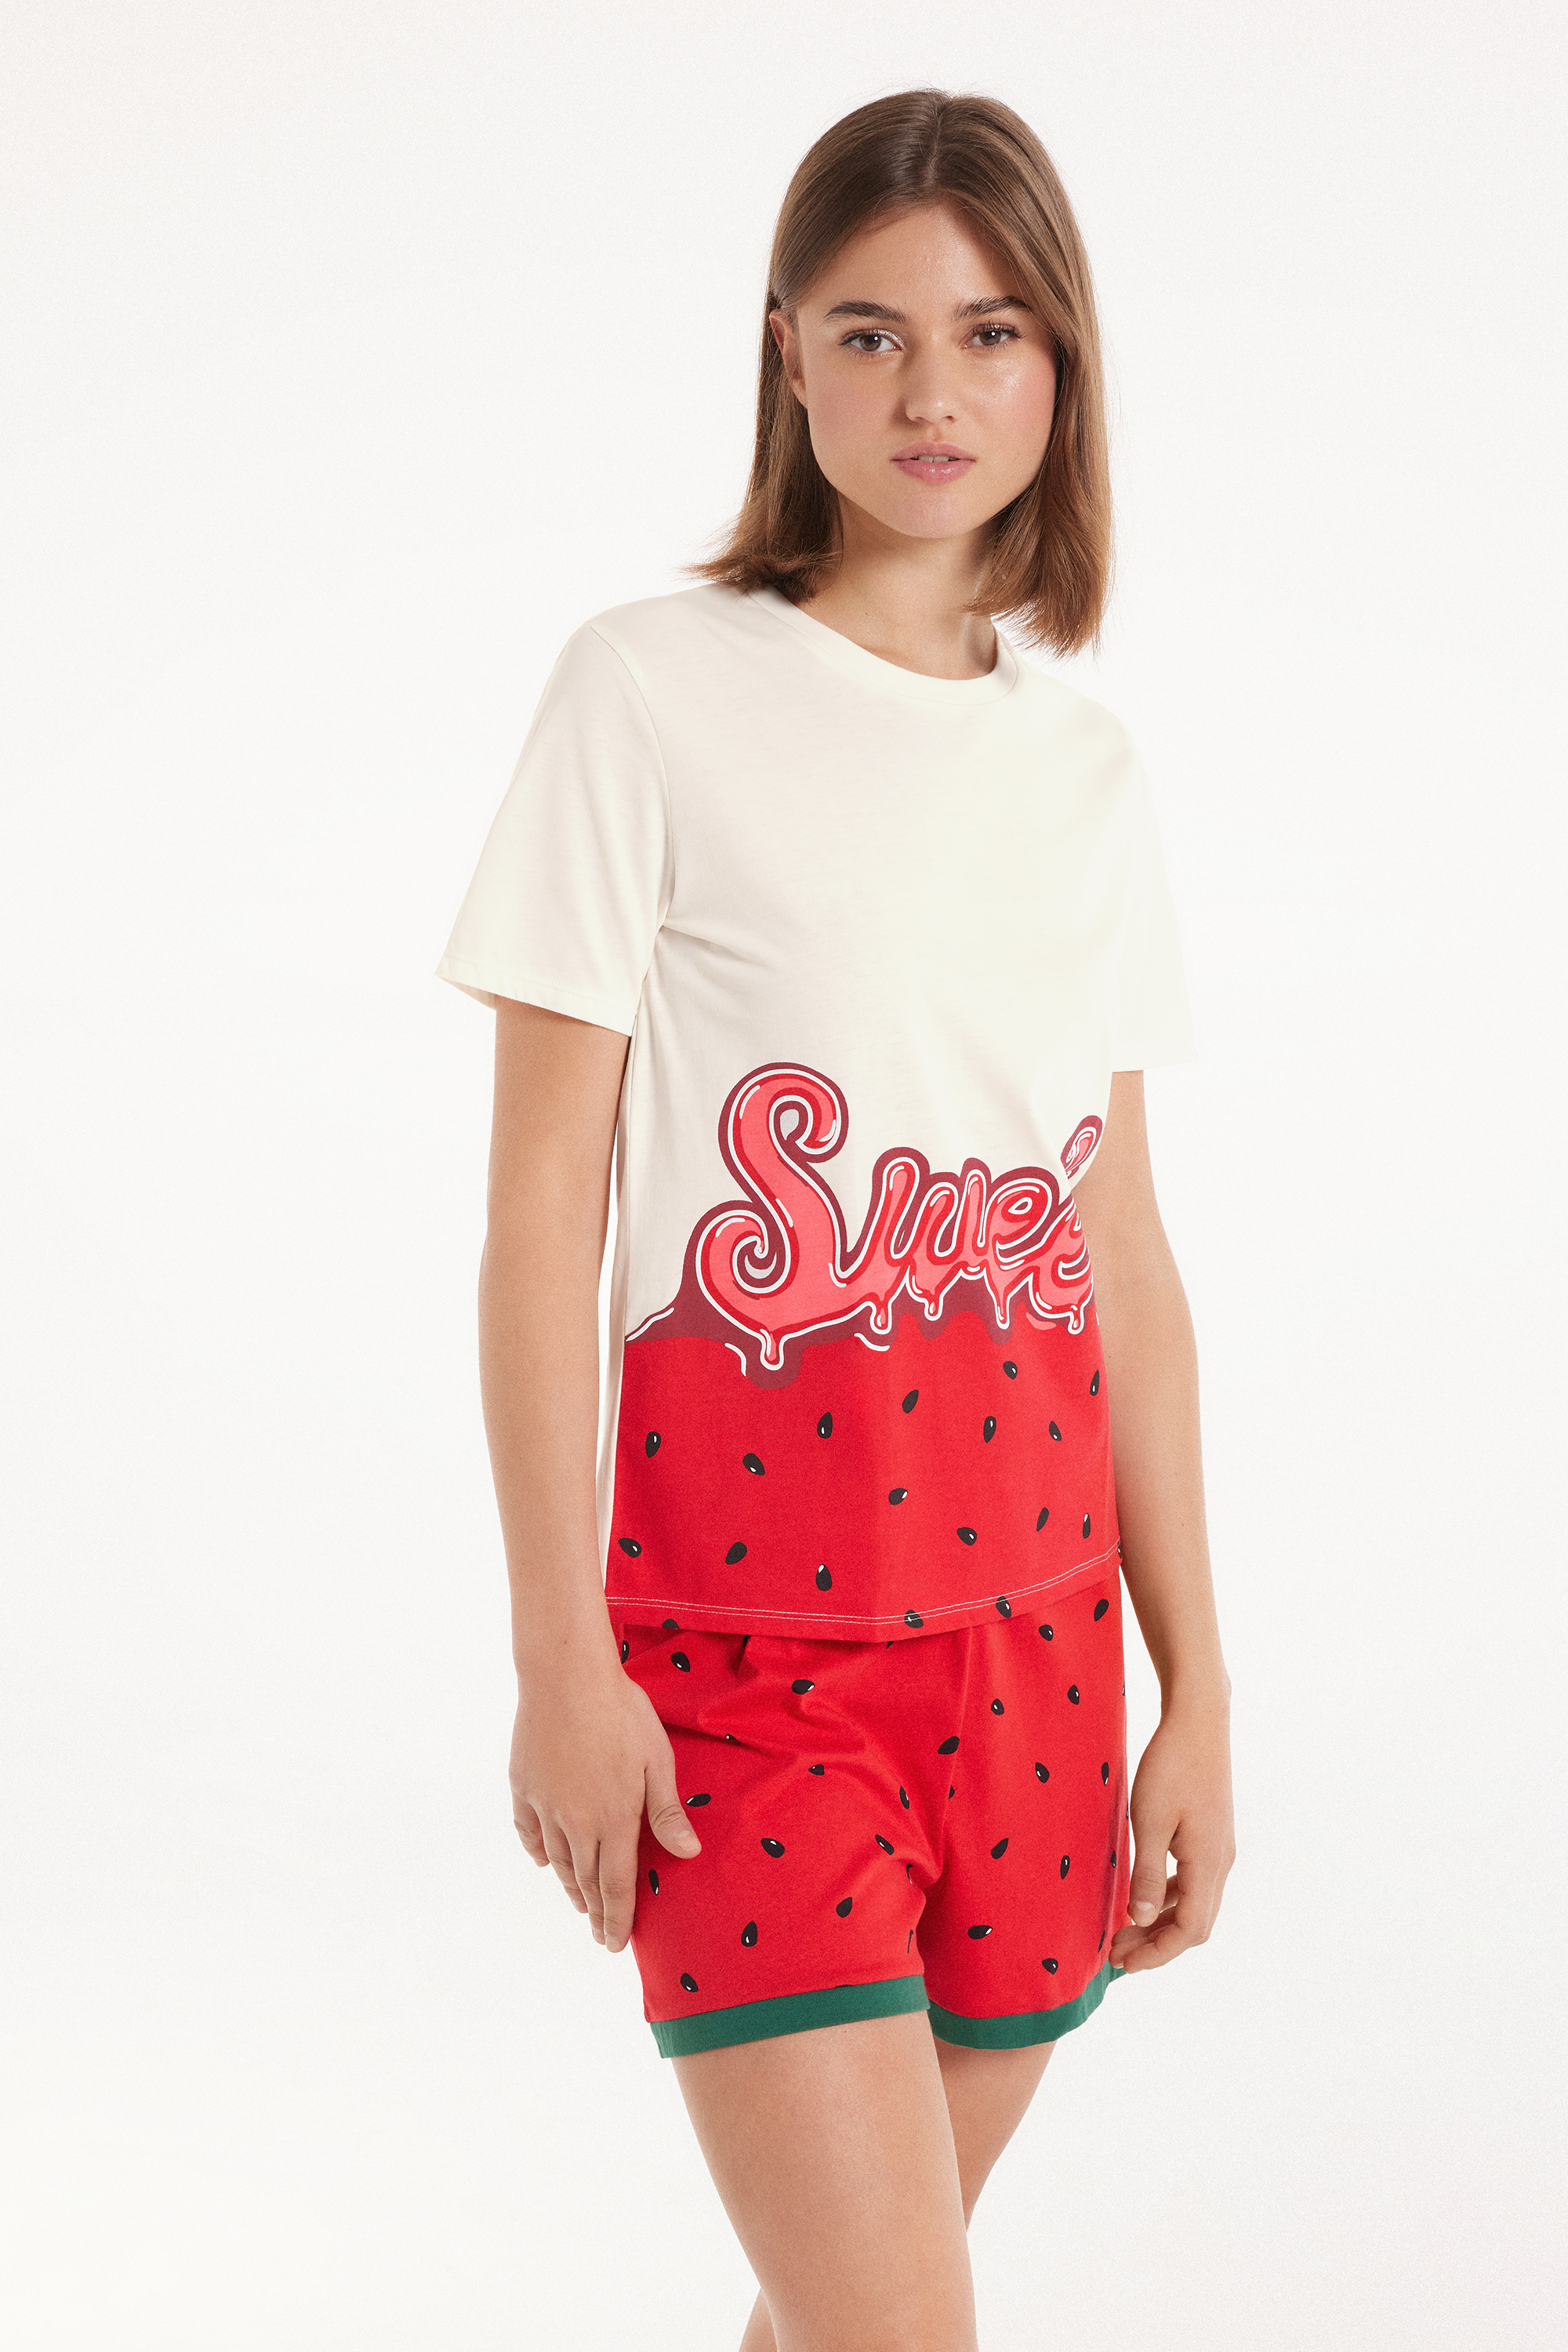 Kurzer Pyjama aus Baumwolle mit kurzen Ärmeln und Wassermelonenprint